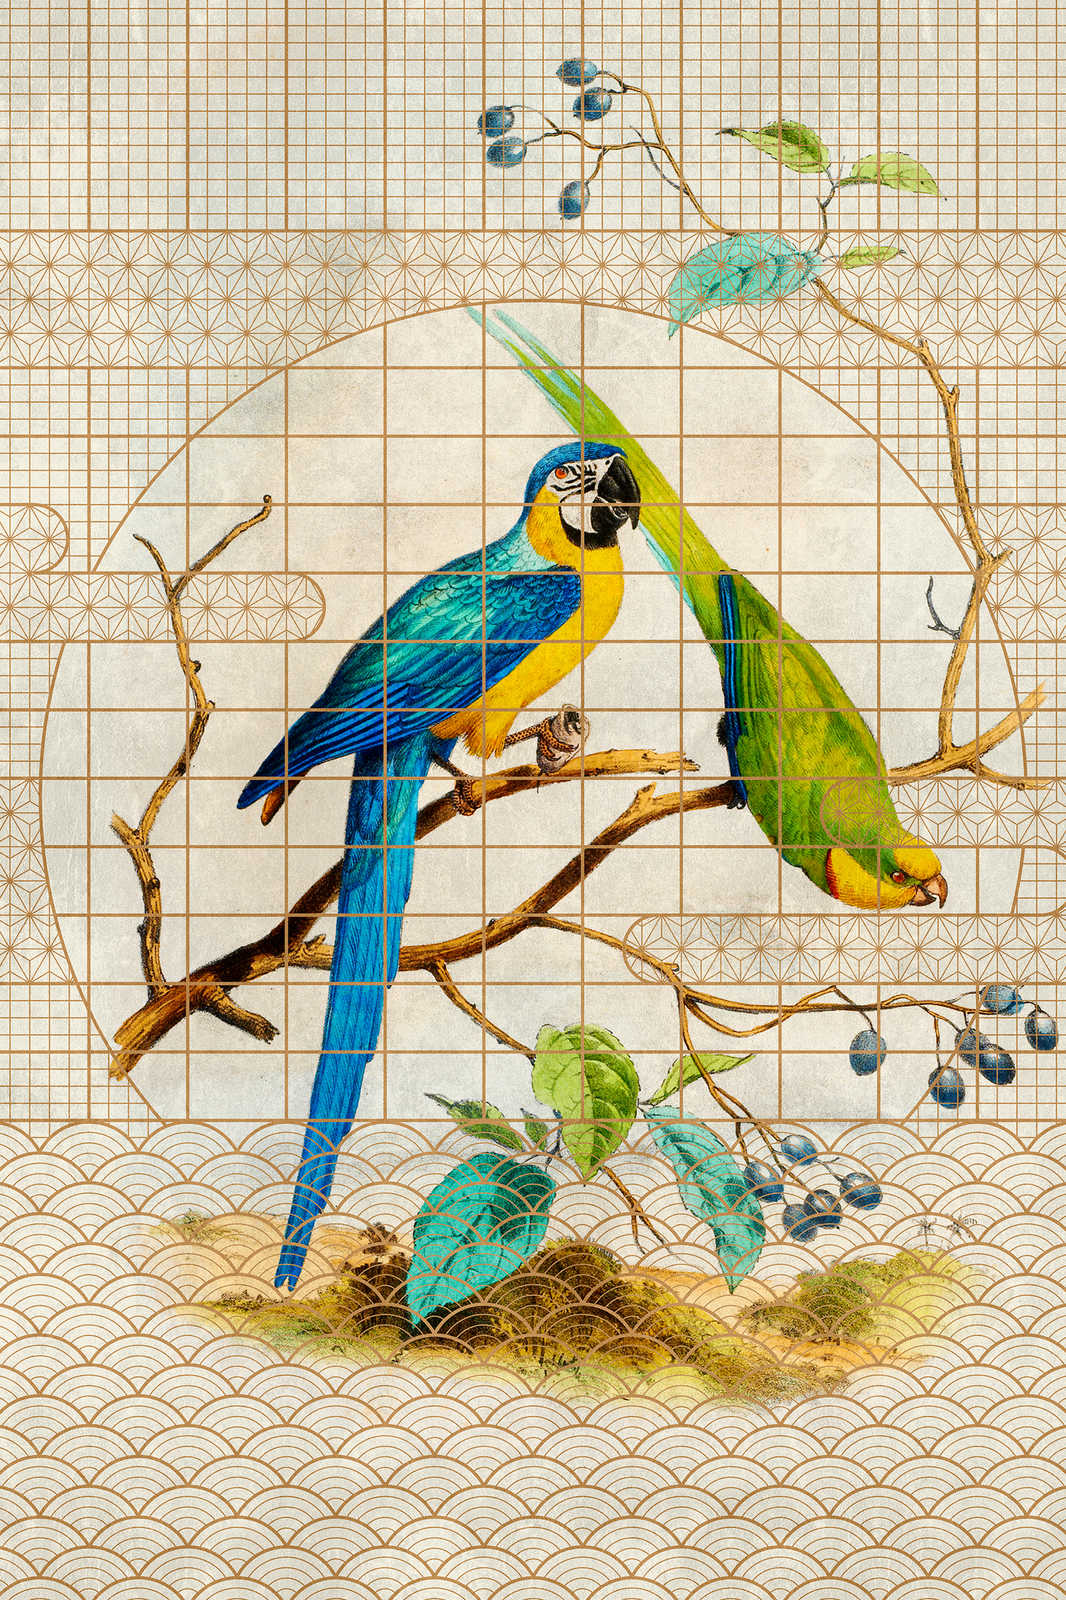             Voliera 3 - Quadro su tela con pappagalli e motivi dorati in stile vintage - 1,20 m x 0,80 m
        